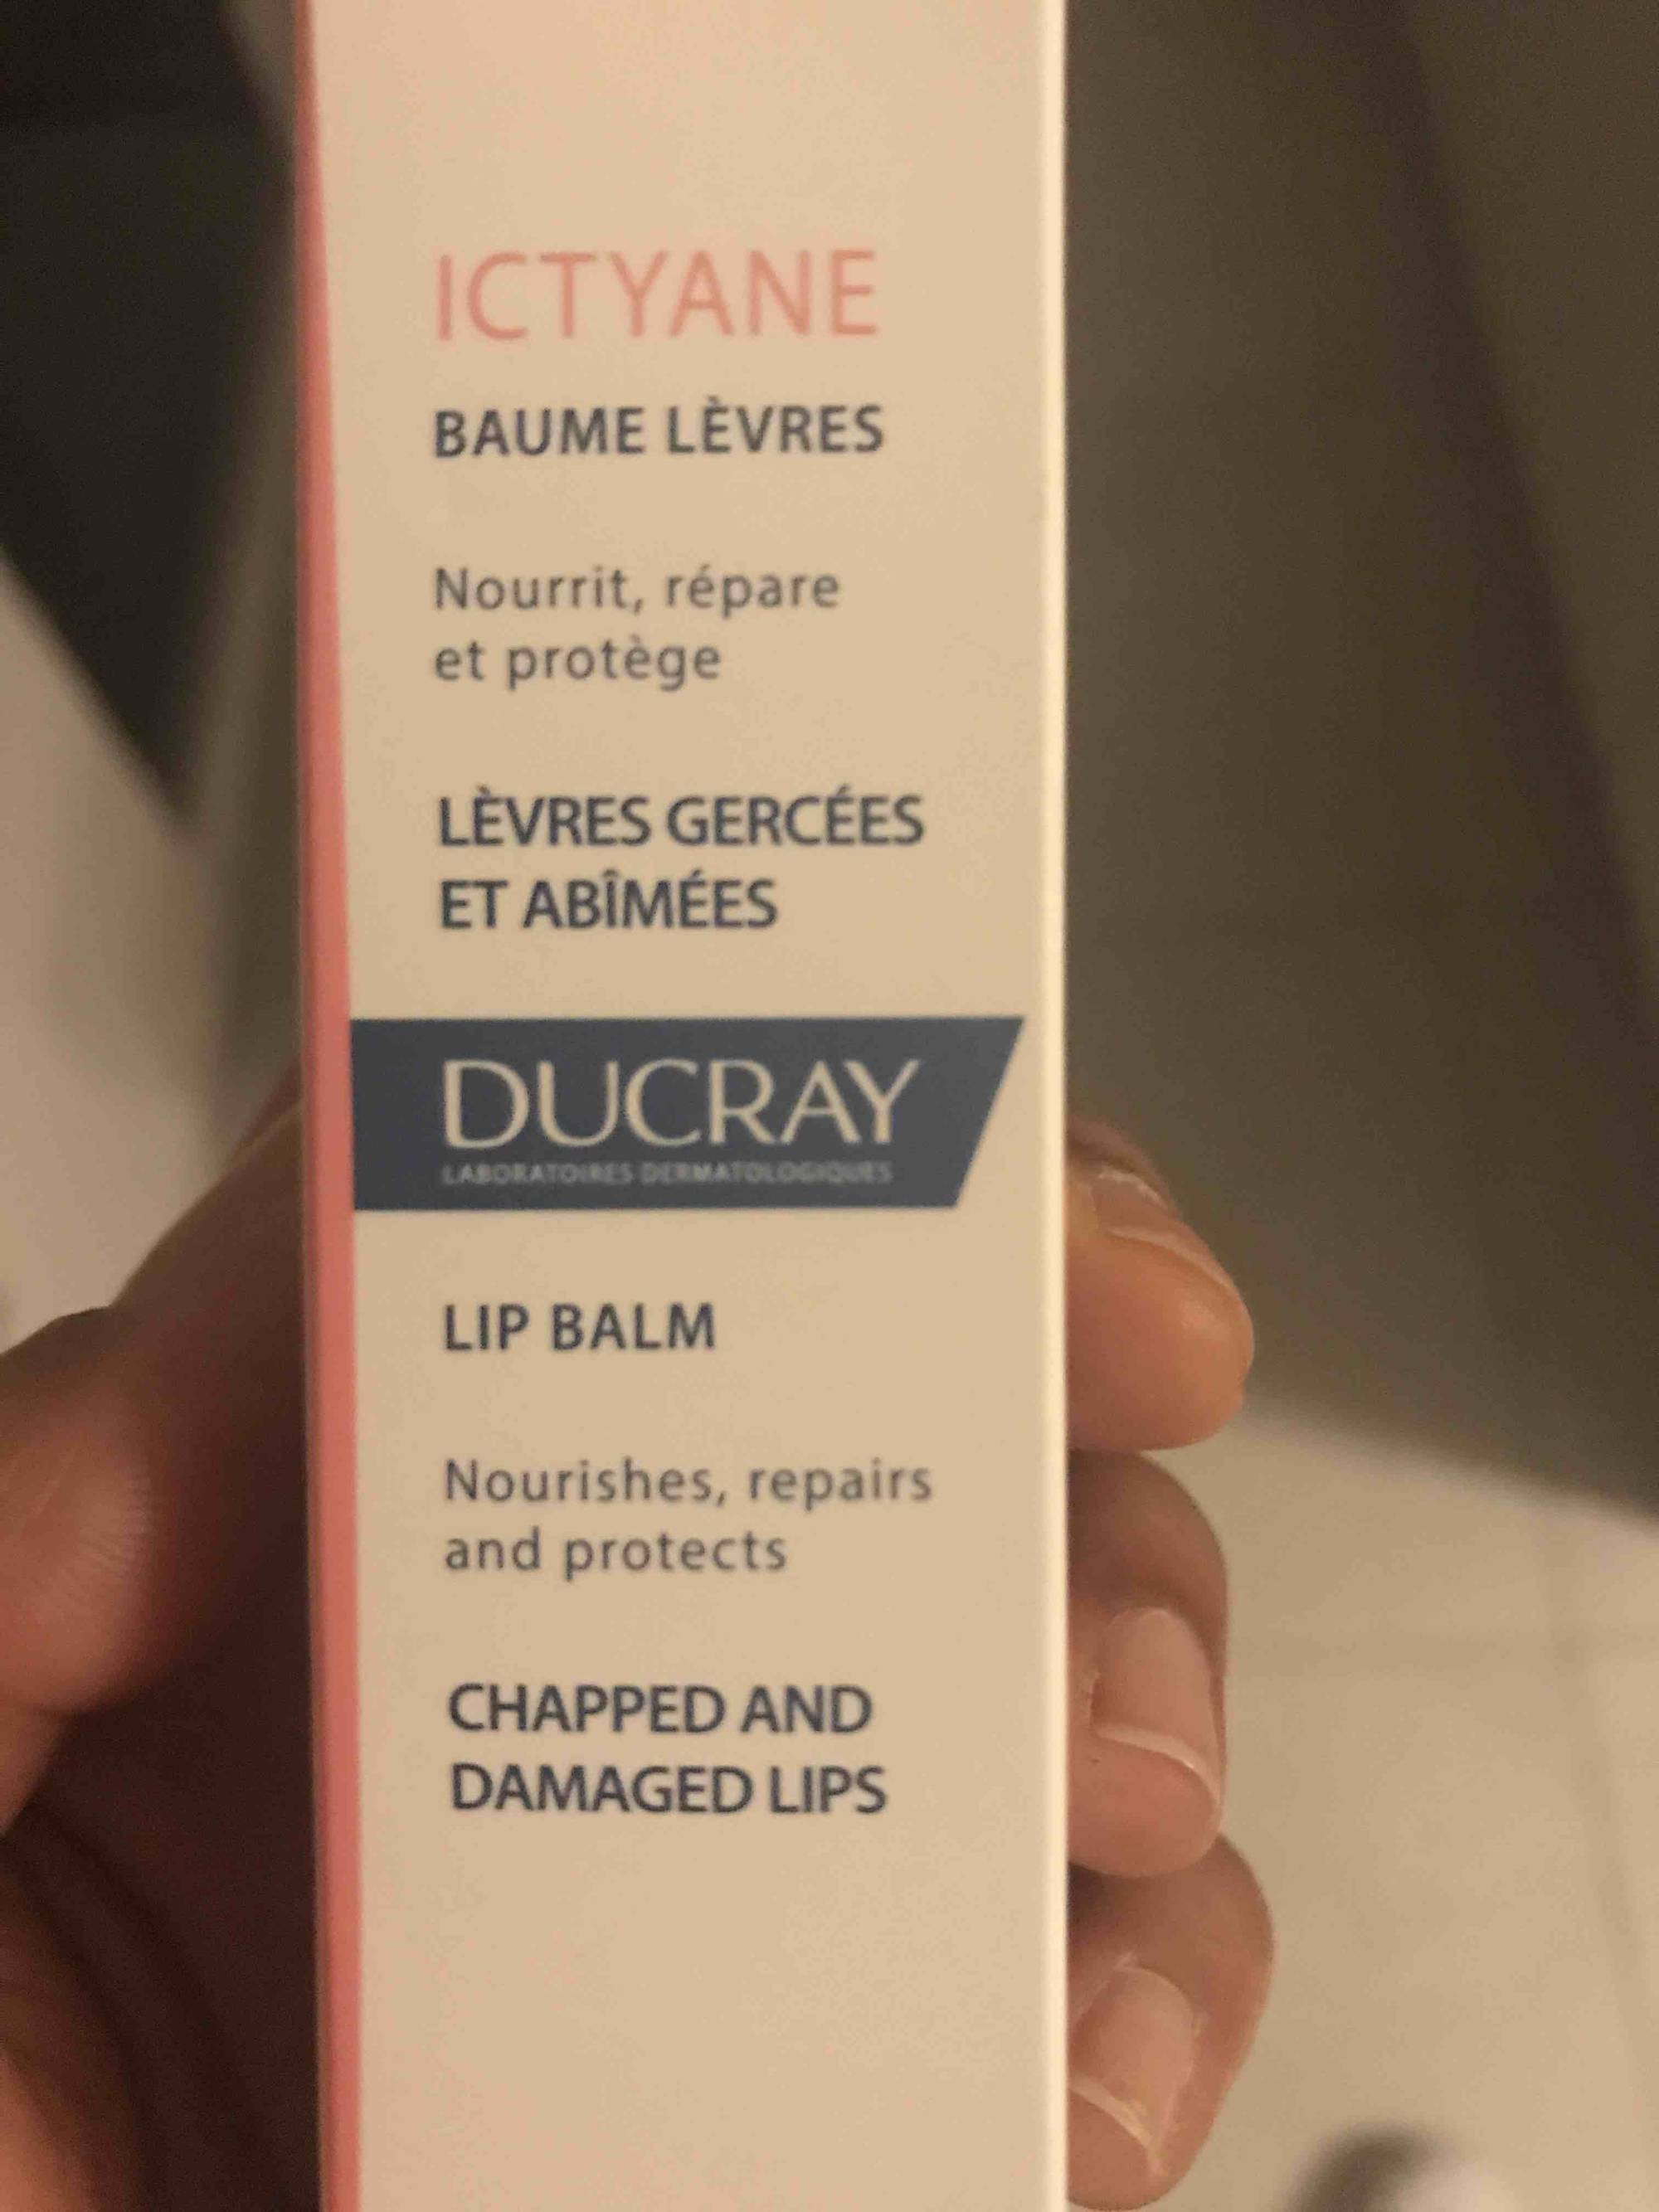 DUCRAY - Ictyane - Baume lèvres gercées et abîmées